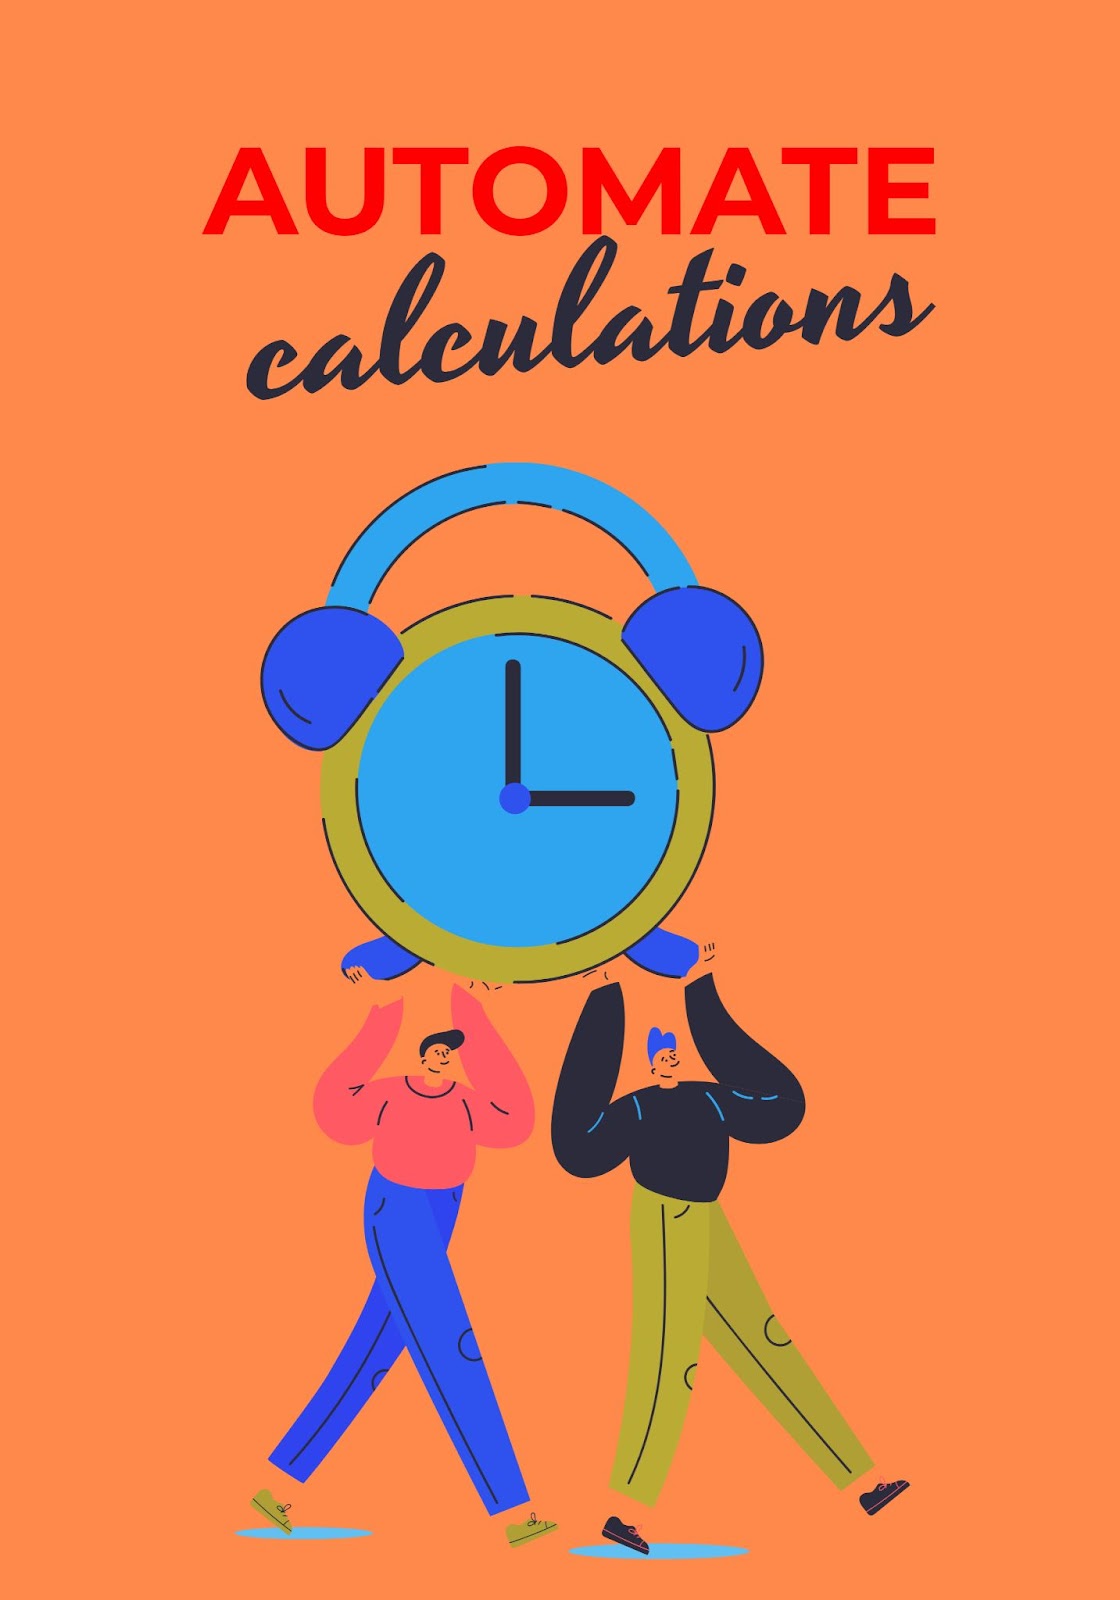 représentation graphique de deux personnes portant une horloge 